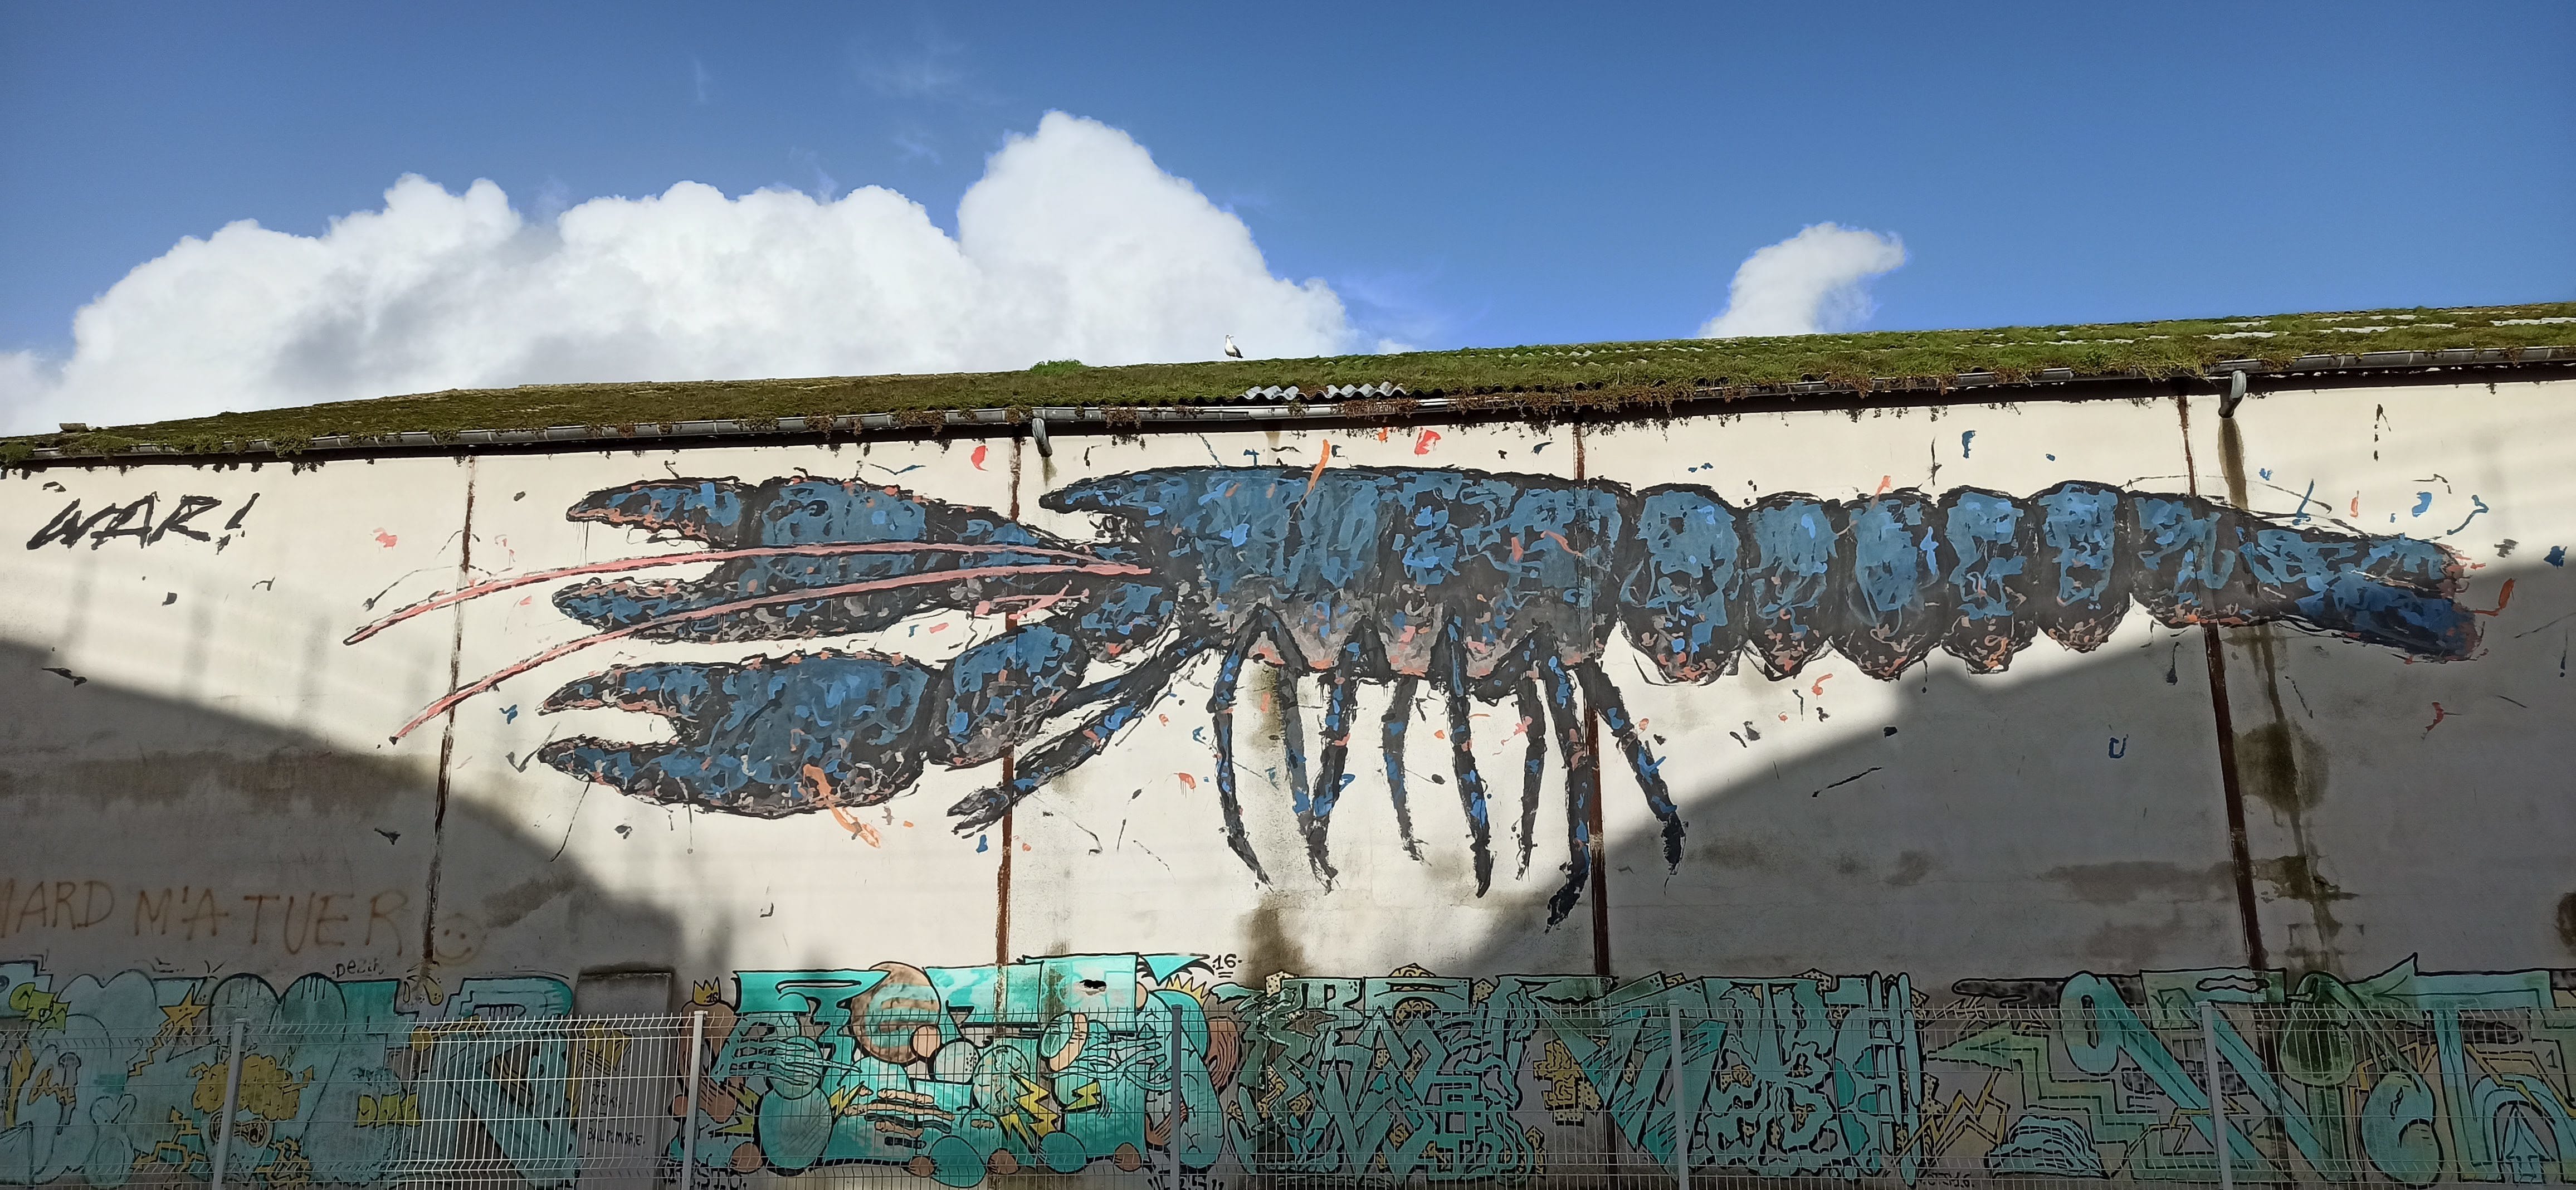 Graffiti 4843  capturé par Rabot à Lorient France